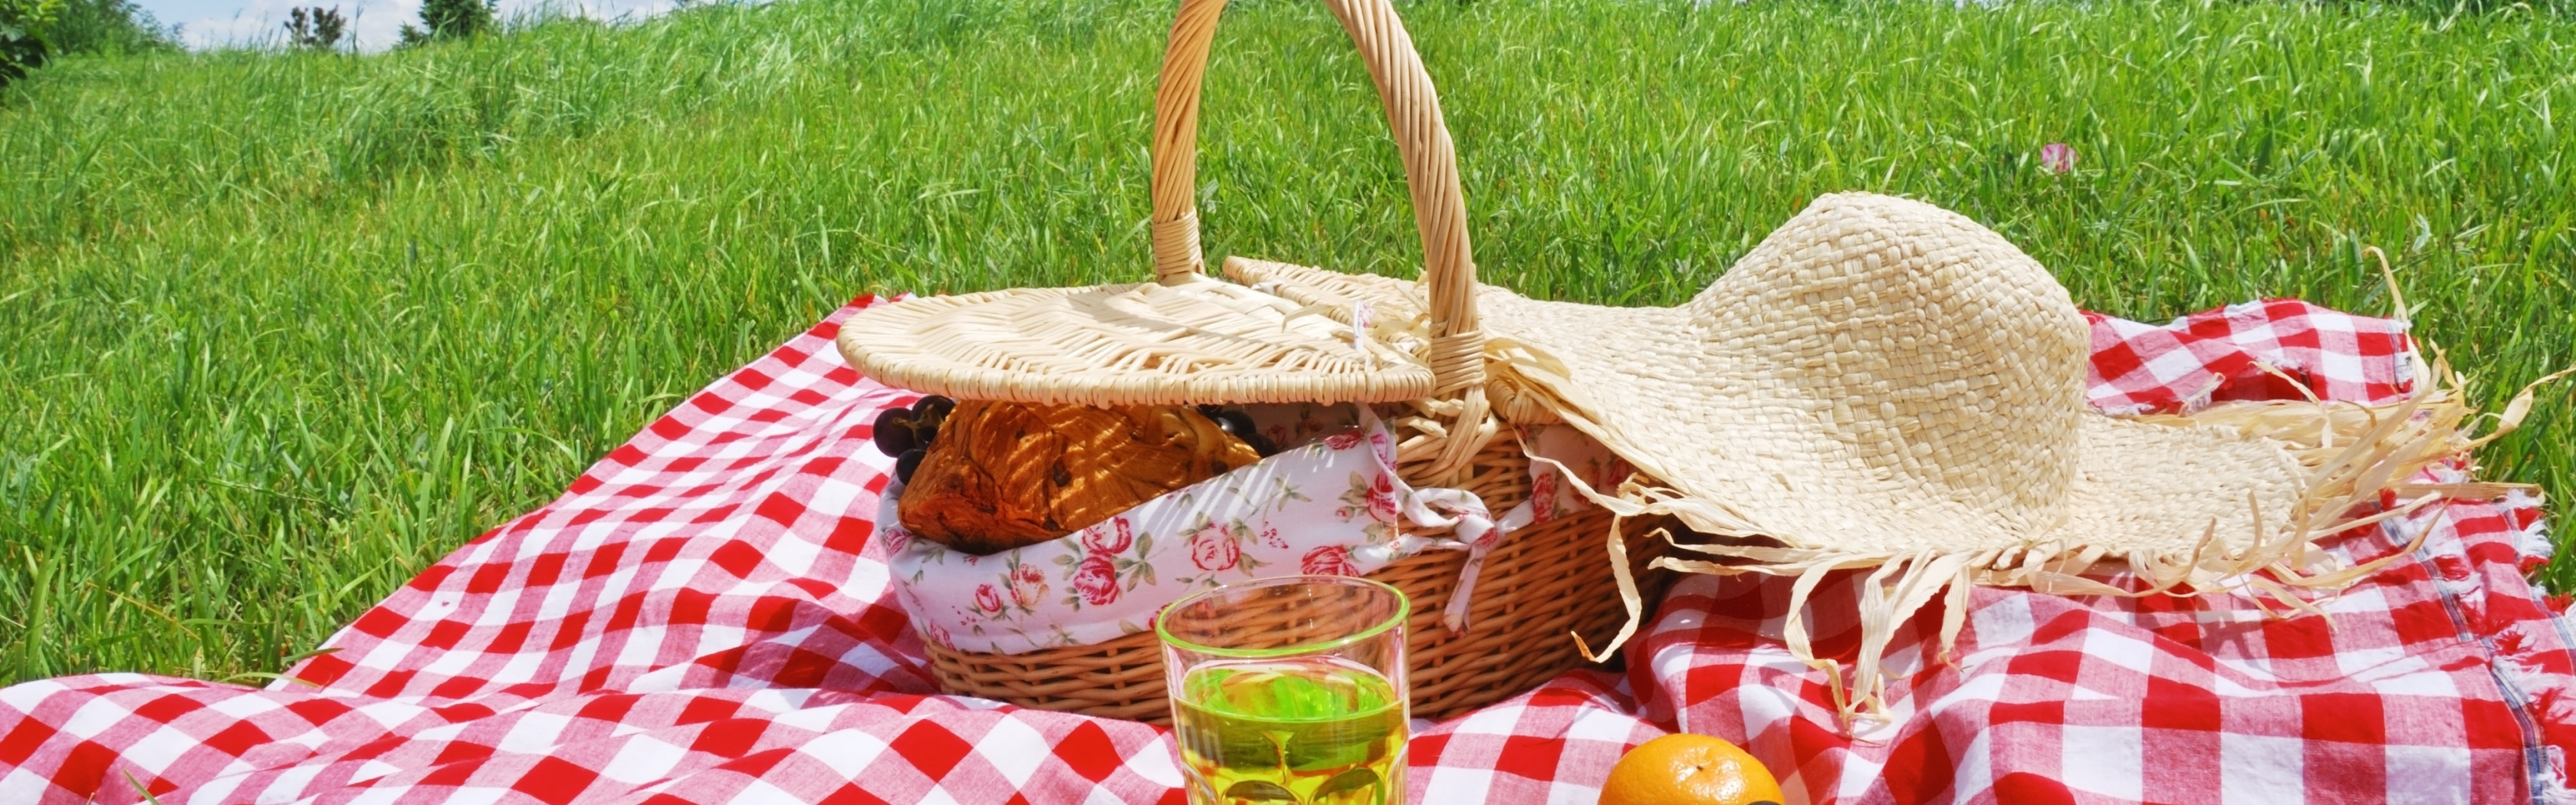 Пикник едет. Пикник с фруктами. Майские праздники пикник. Пасхальный пикник. Корзинка для пикника на траве.